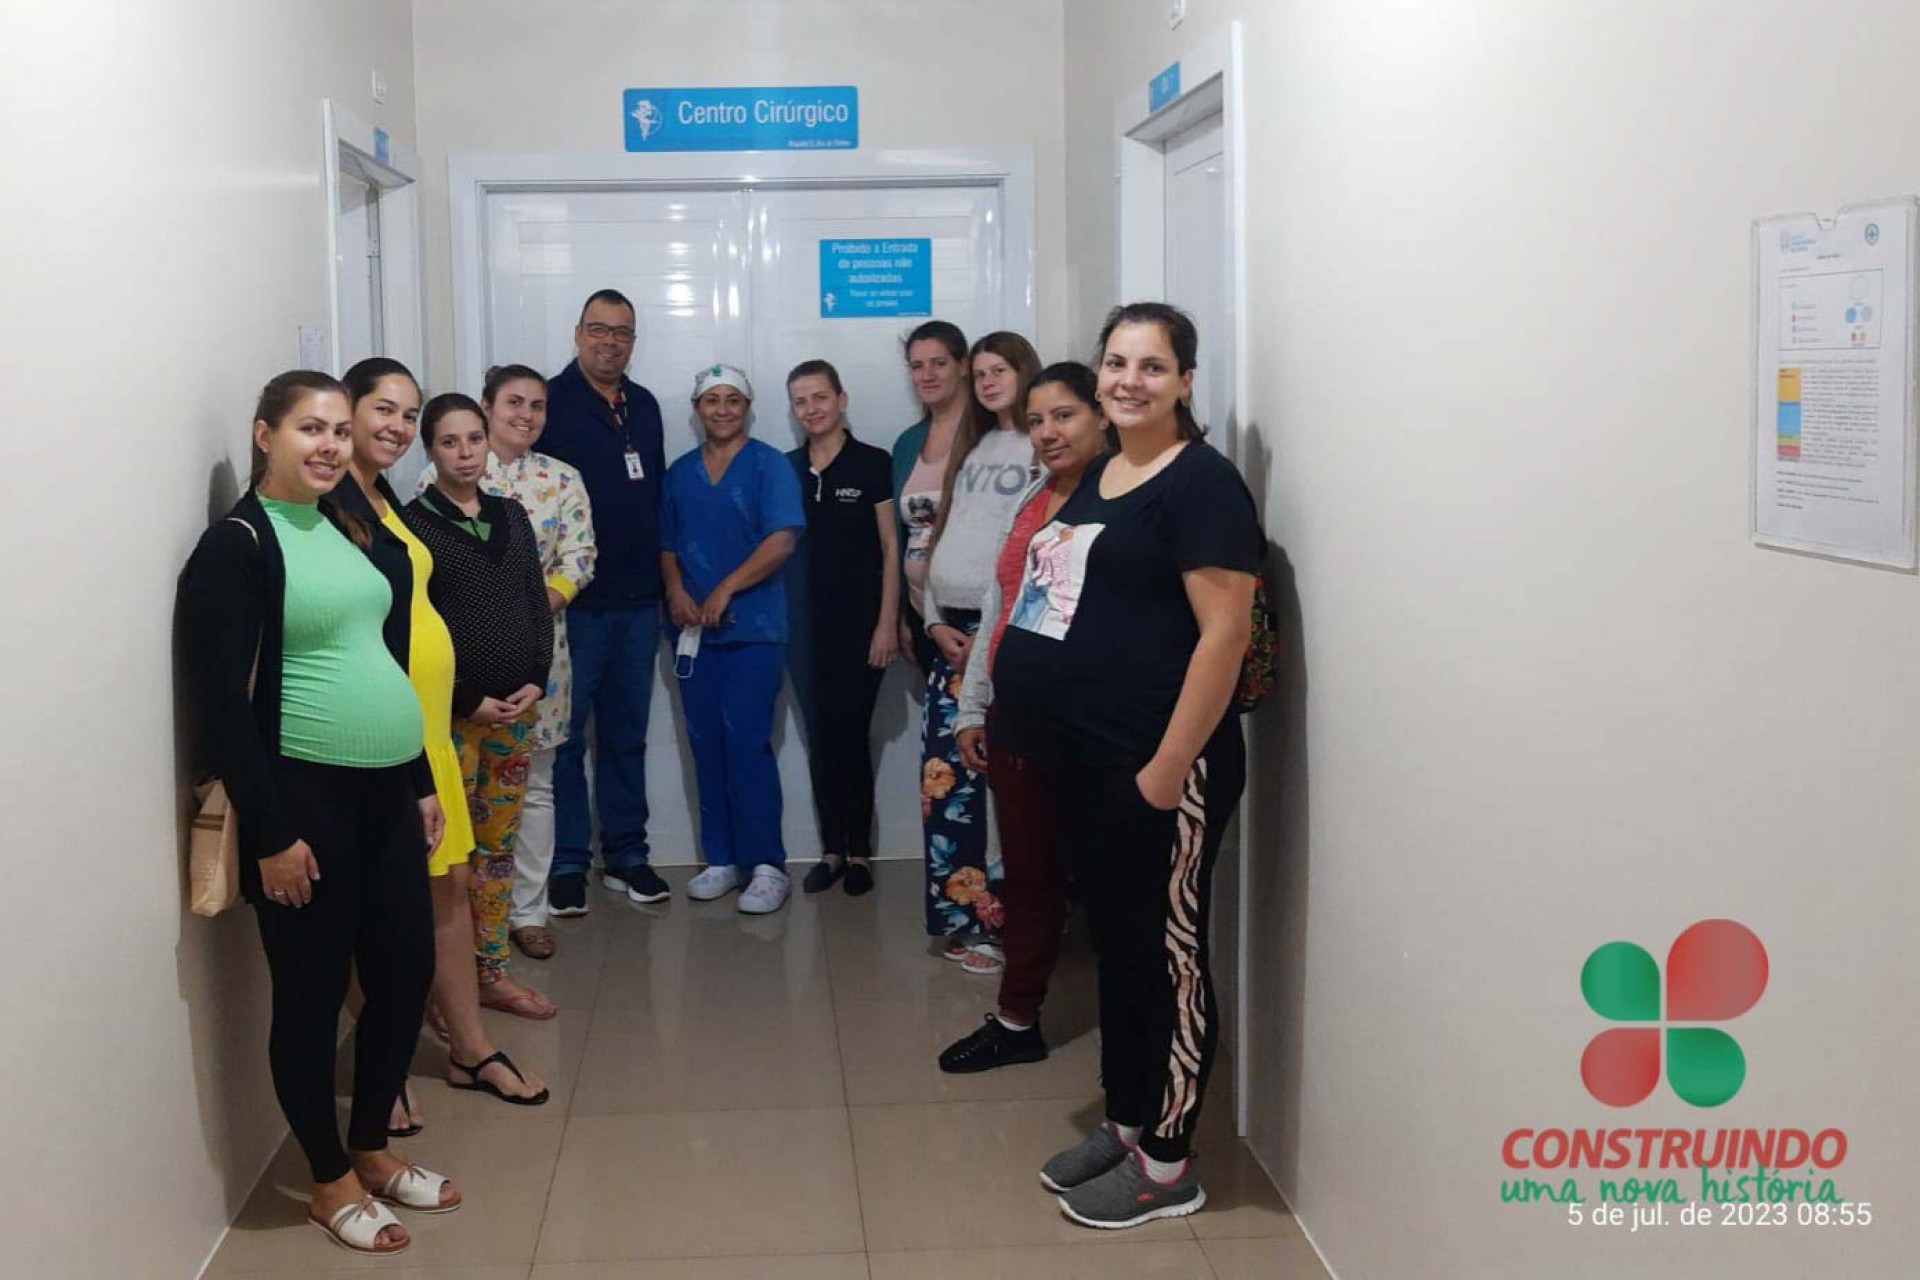 Grupo de Gestantes realiza Passeio de Conhecimento no Hospital Nossa Senhora de Fátima